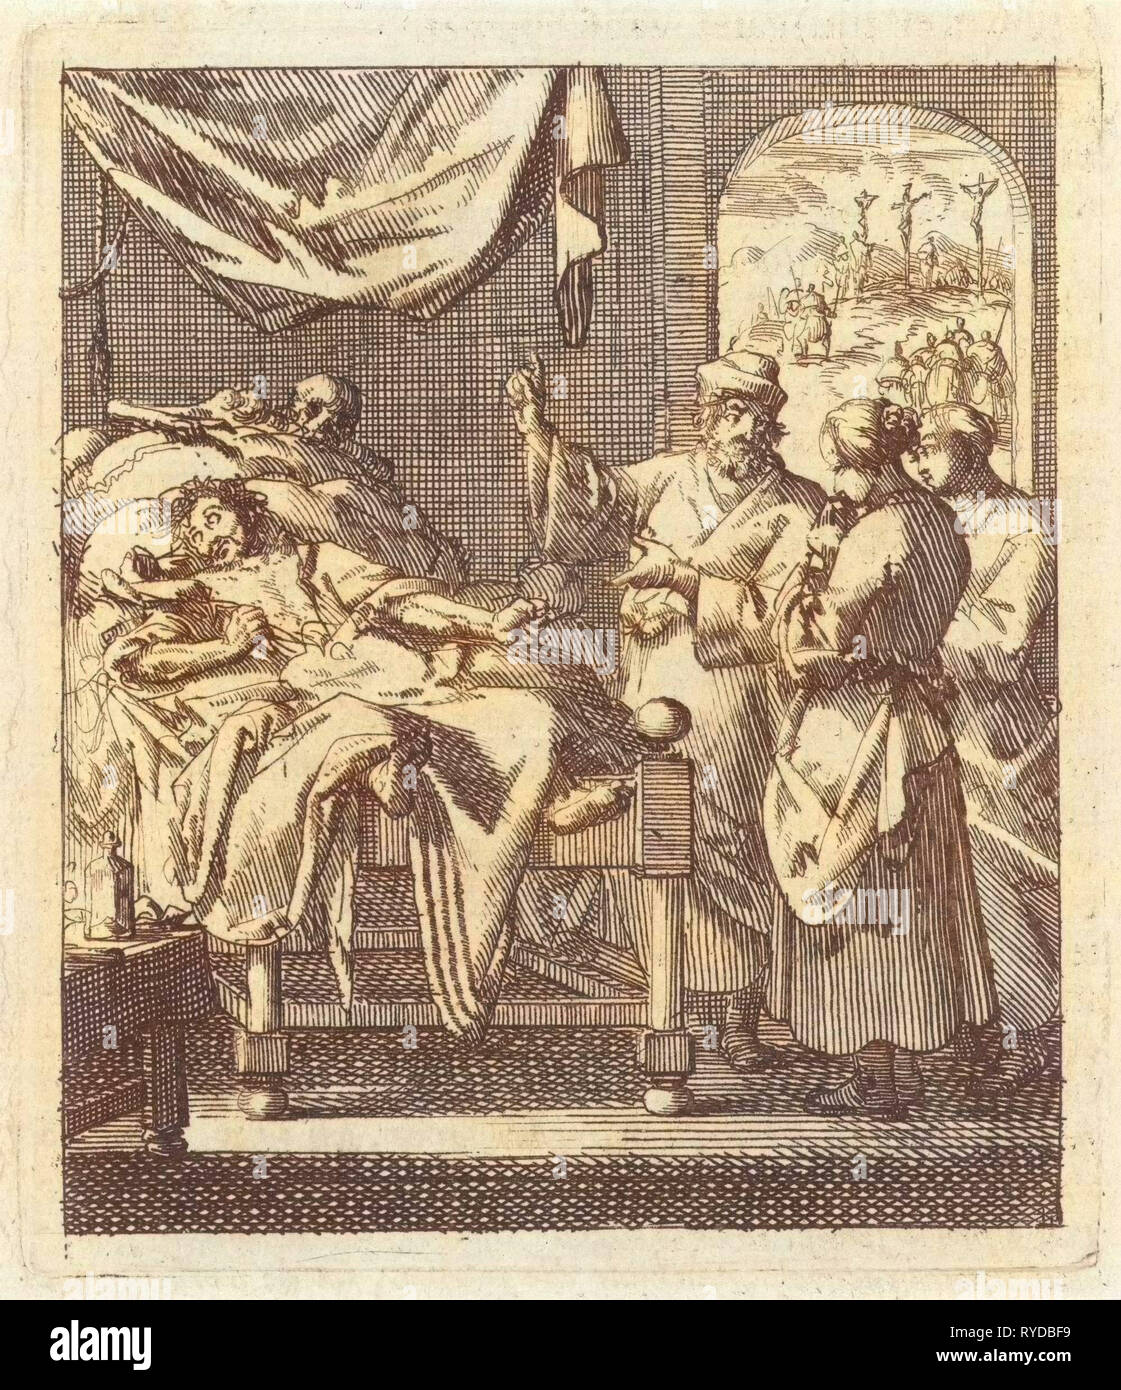 Trois personnes à un malade, derrière la personne malade semble mort, Jan Luyken, mer. Pieter Arentsz (II), 1689 Banque D'Images